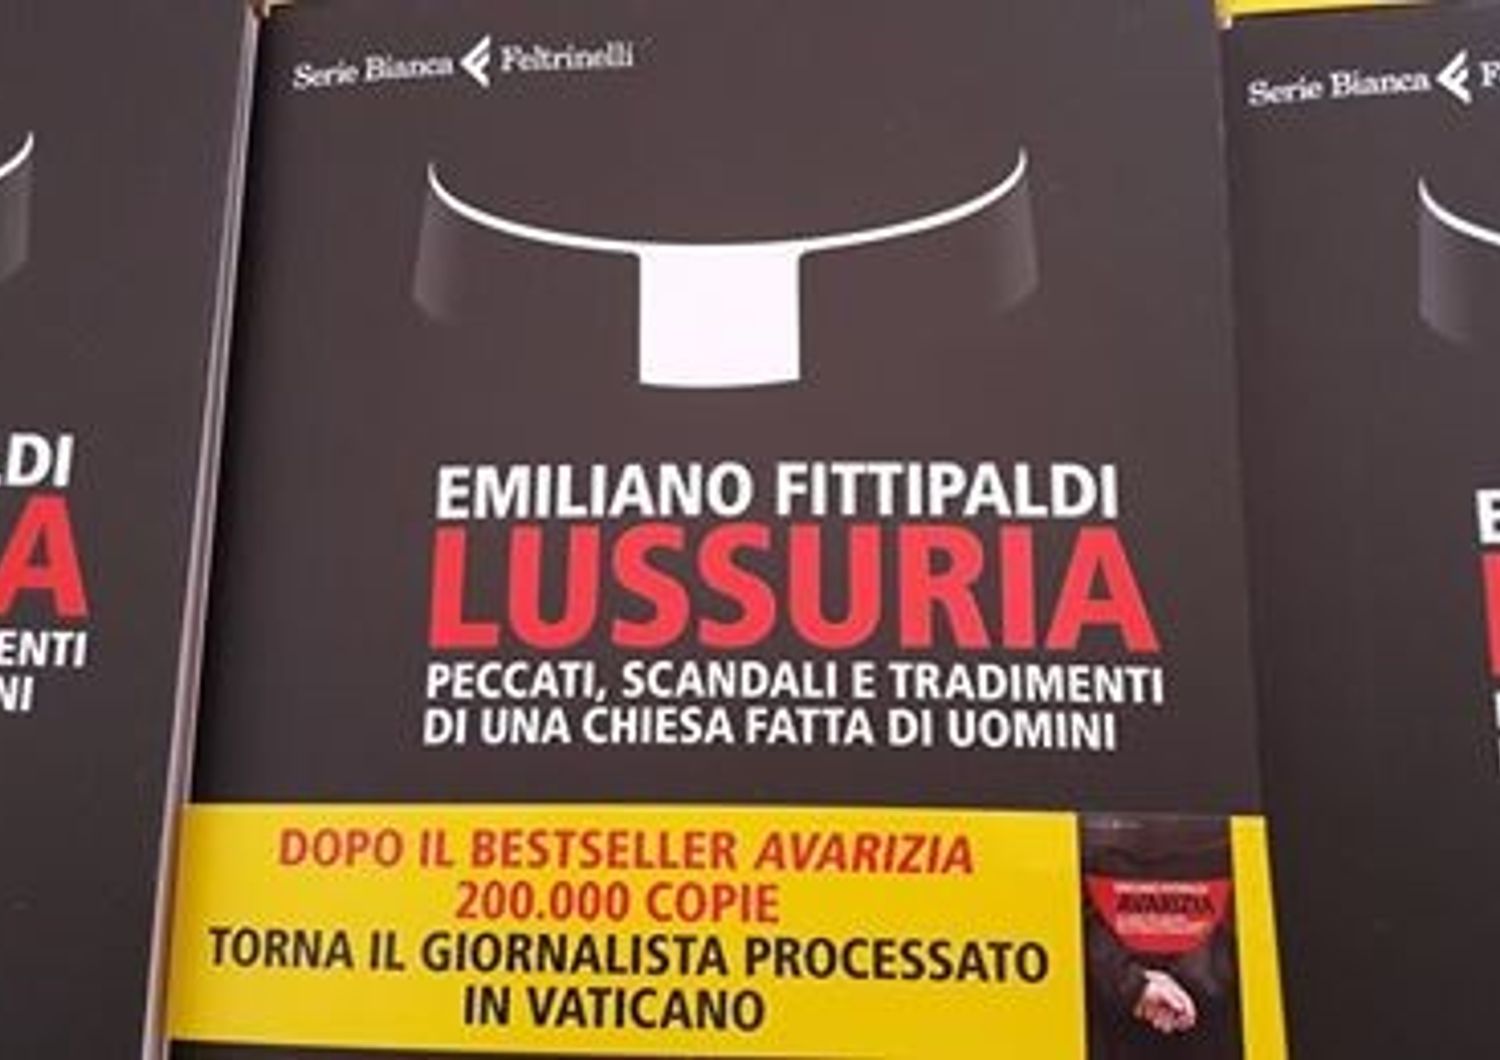 &nbsp;Copertina libro di Emiliano Fittipaldi, in uscita il 19 gennaio